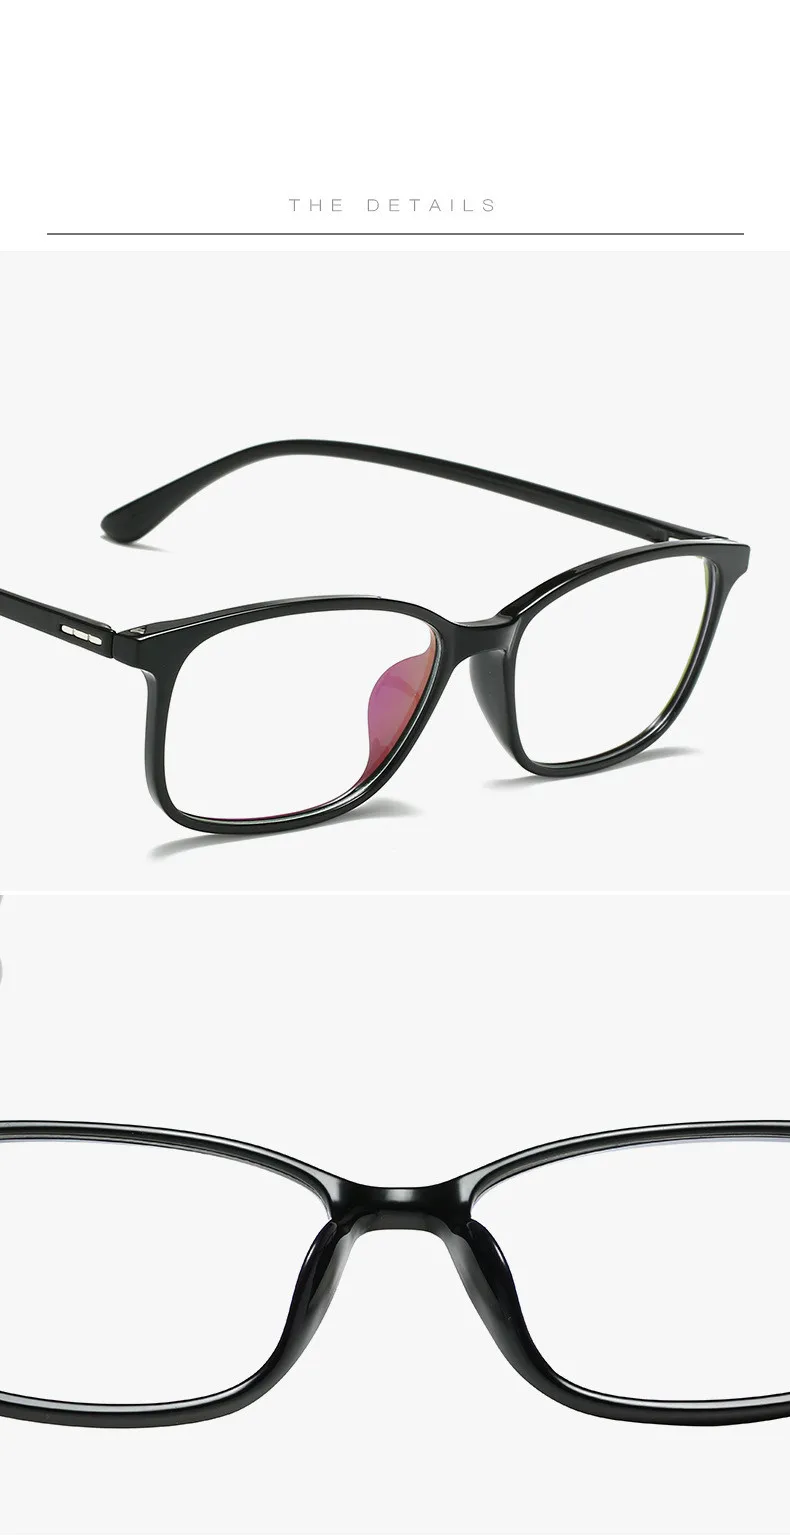 Ультра-светильник TR90 Blu-Ray компьютерные очки оправа с прозрачными линзами без градусного синего покрытия очки для чтения